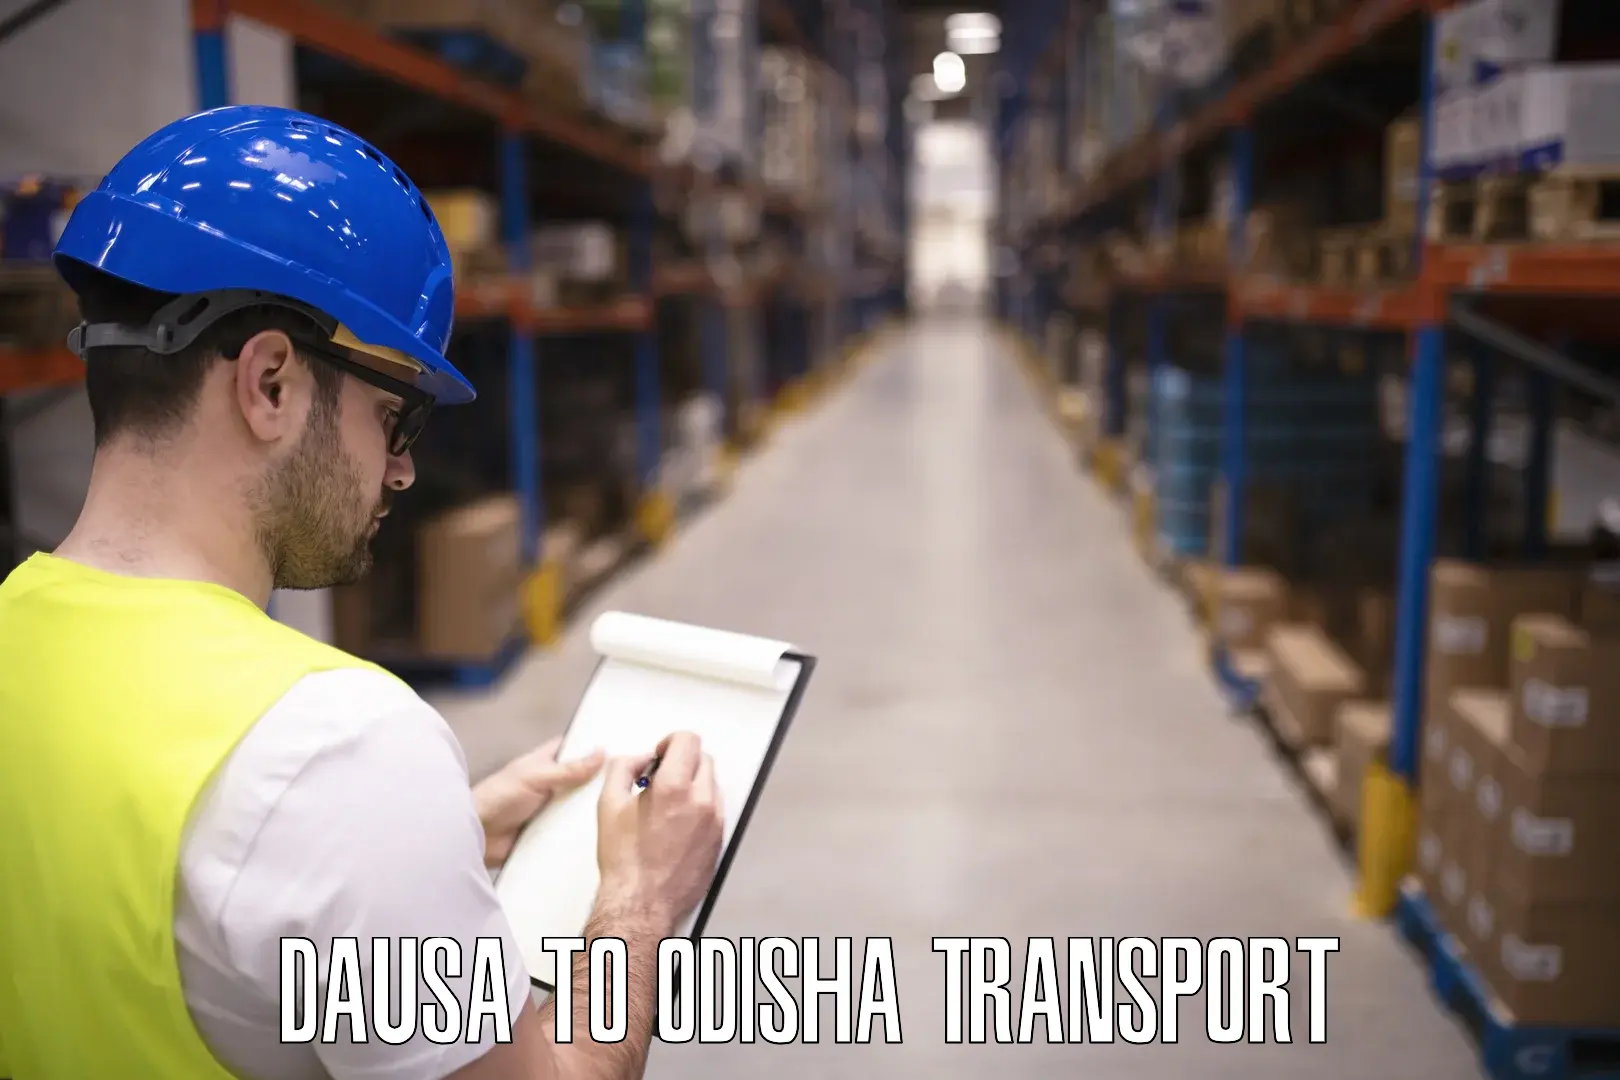 Cargo transportation services Dausa to Basta